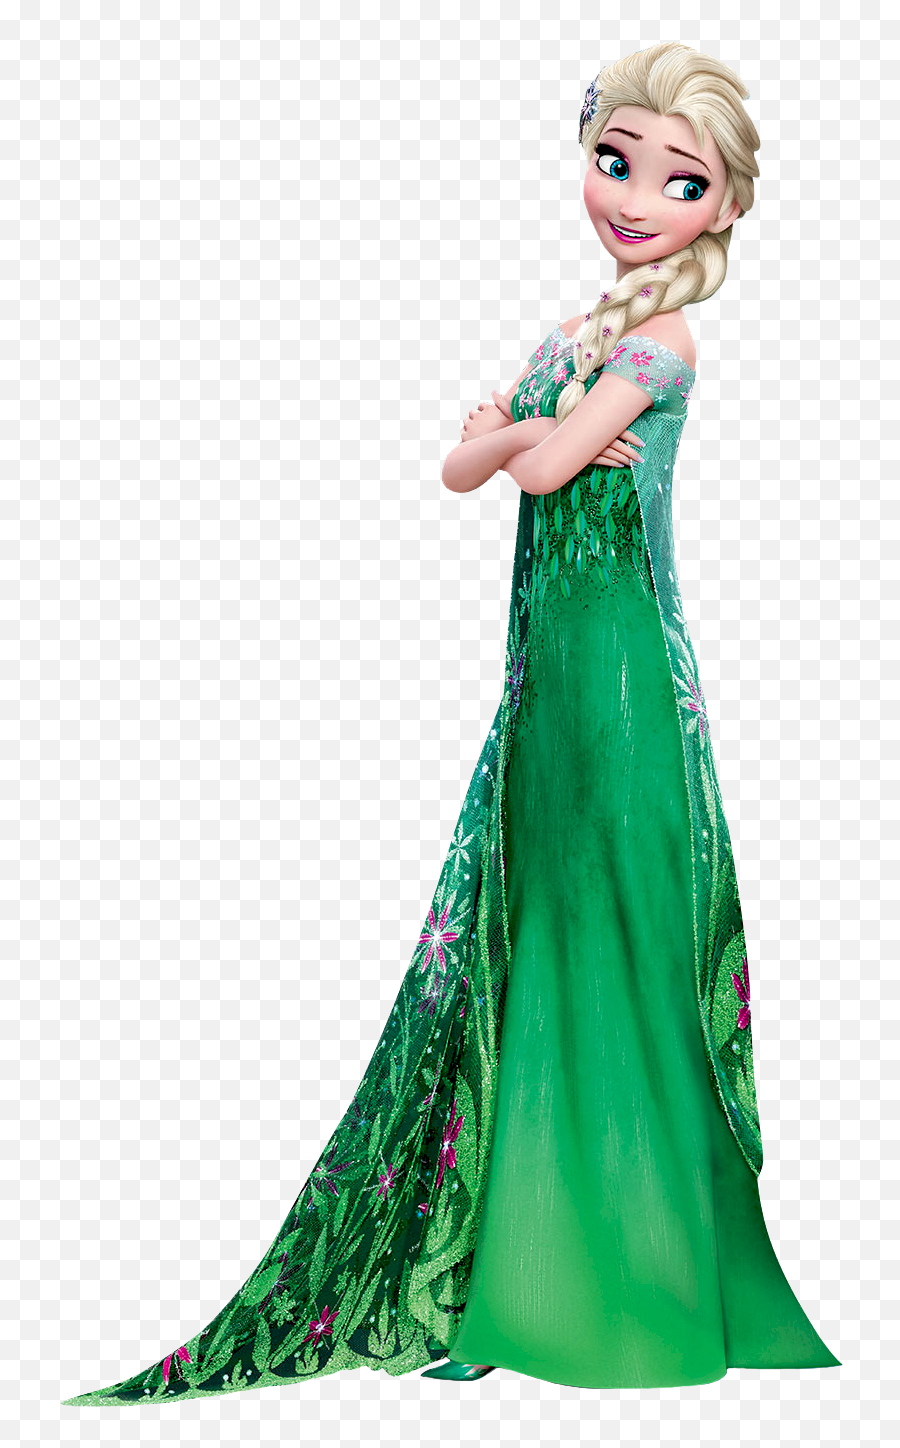 Queen Elsa Frozen Fever - Frozen Elsa Frozen Fever Png,Elsa Transparent Background